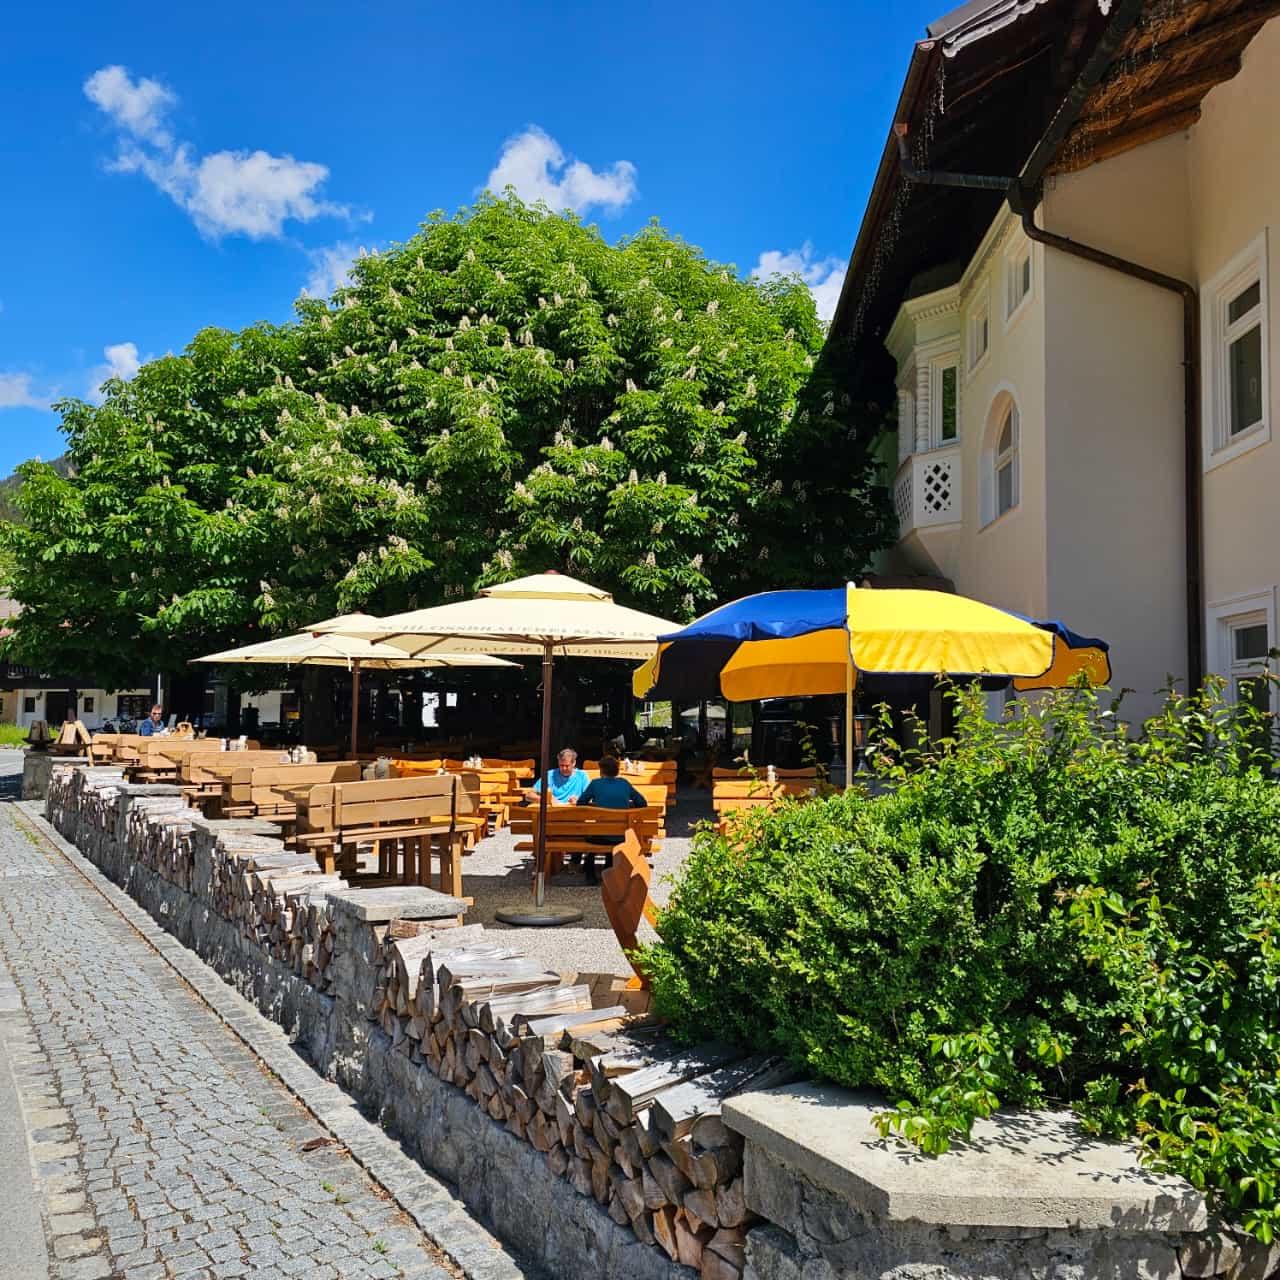 Restaurant "Gasthof zum Wendelstein" in Bayrischzell